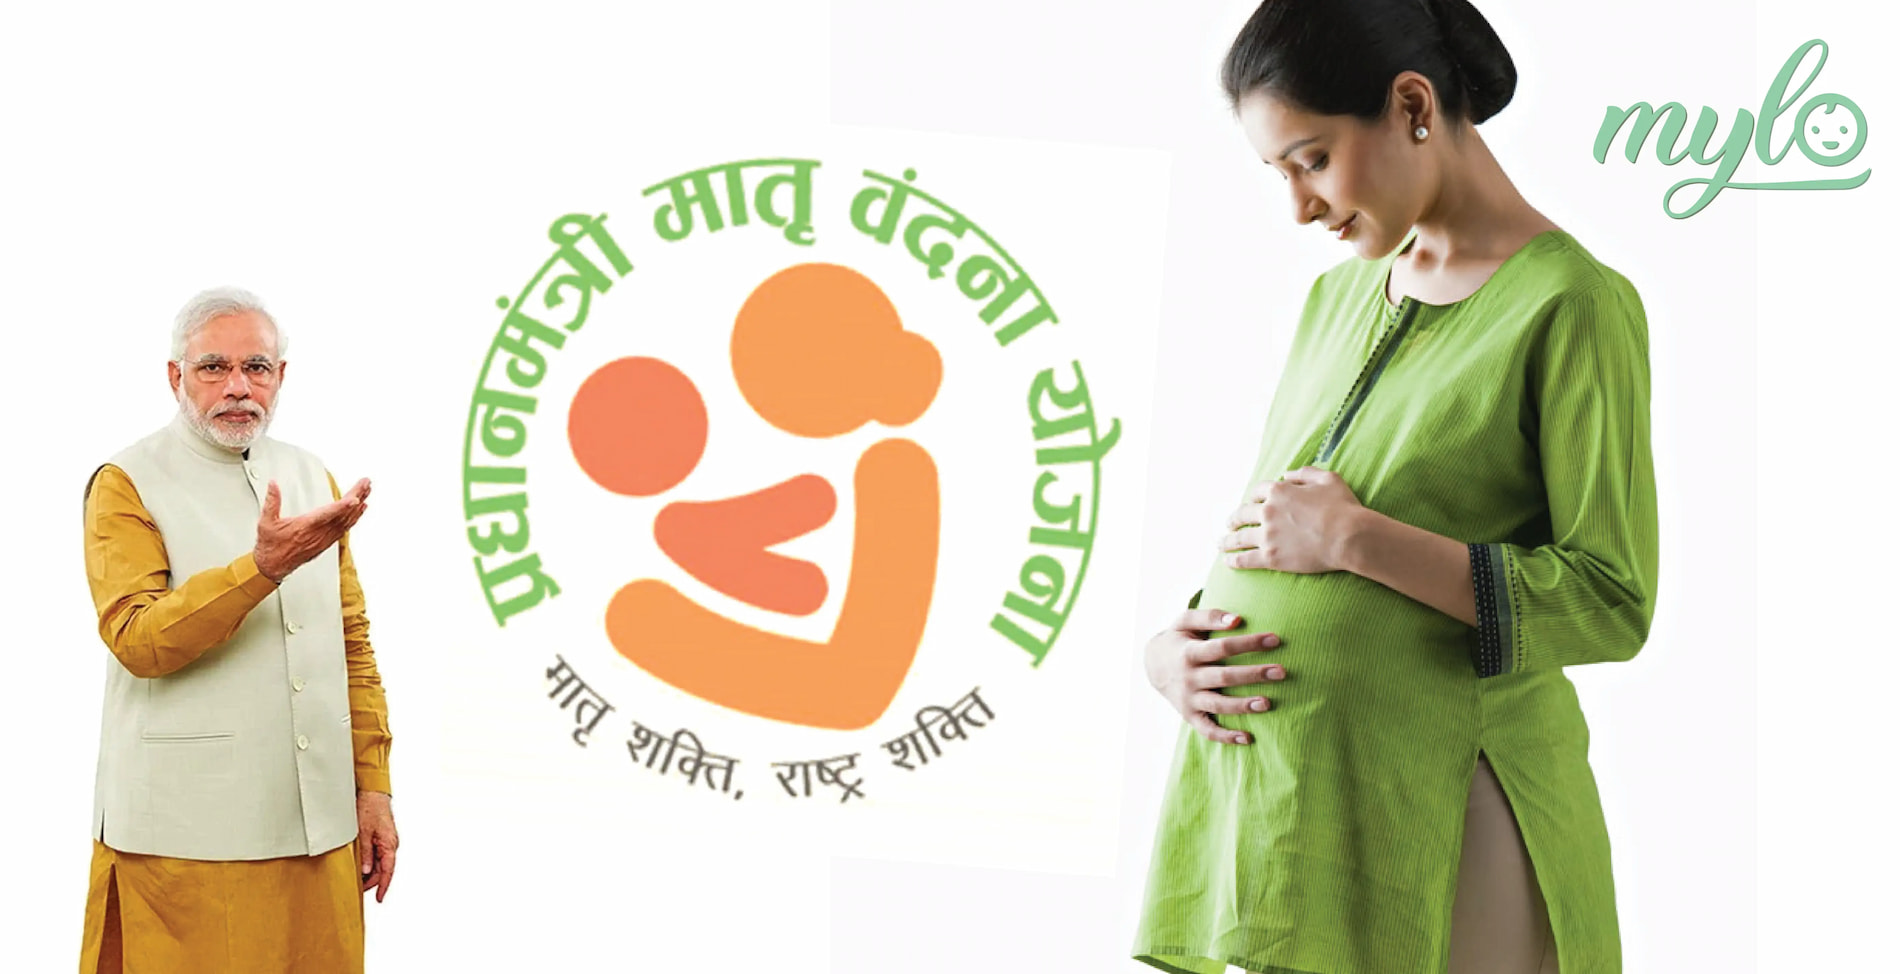 प्रधानमंत्री मातृ वंदना योजना (PMMVY) के तहत गर्भवती महिला को मिलेंगे 5000 रुपये, जानिए इस योजना के लिए कैसे आवेदन करें?